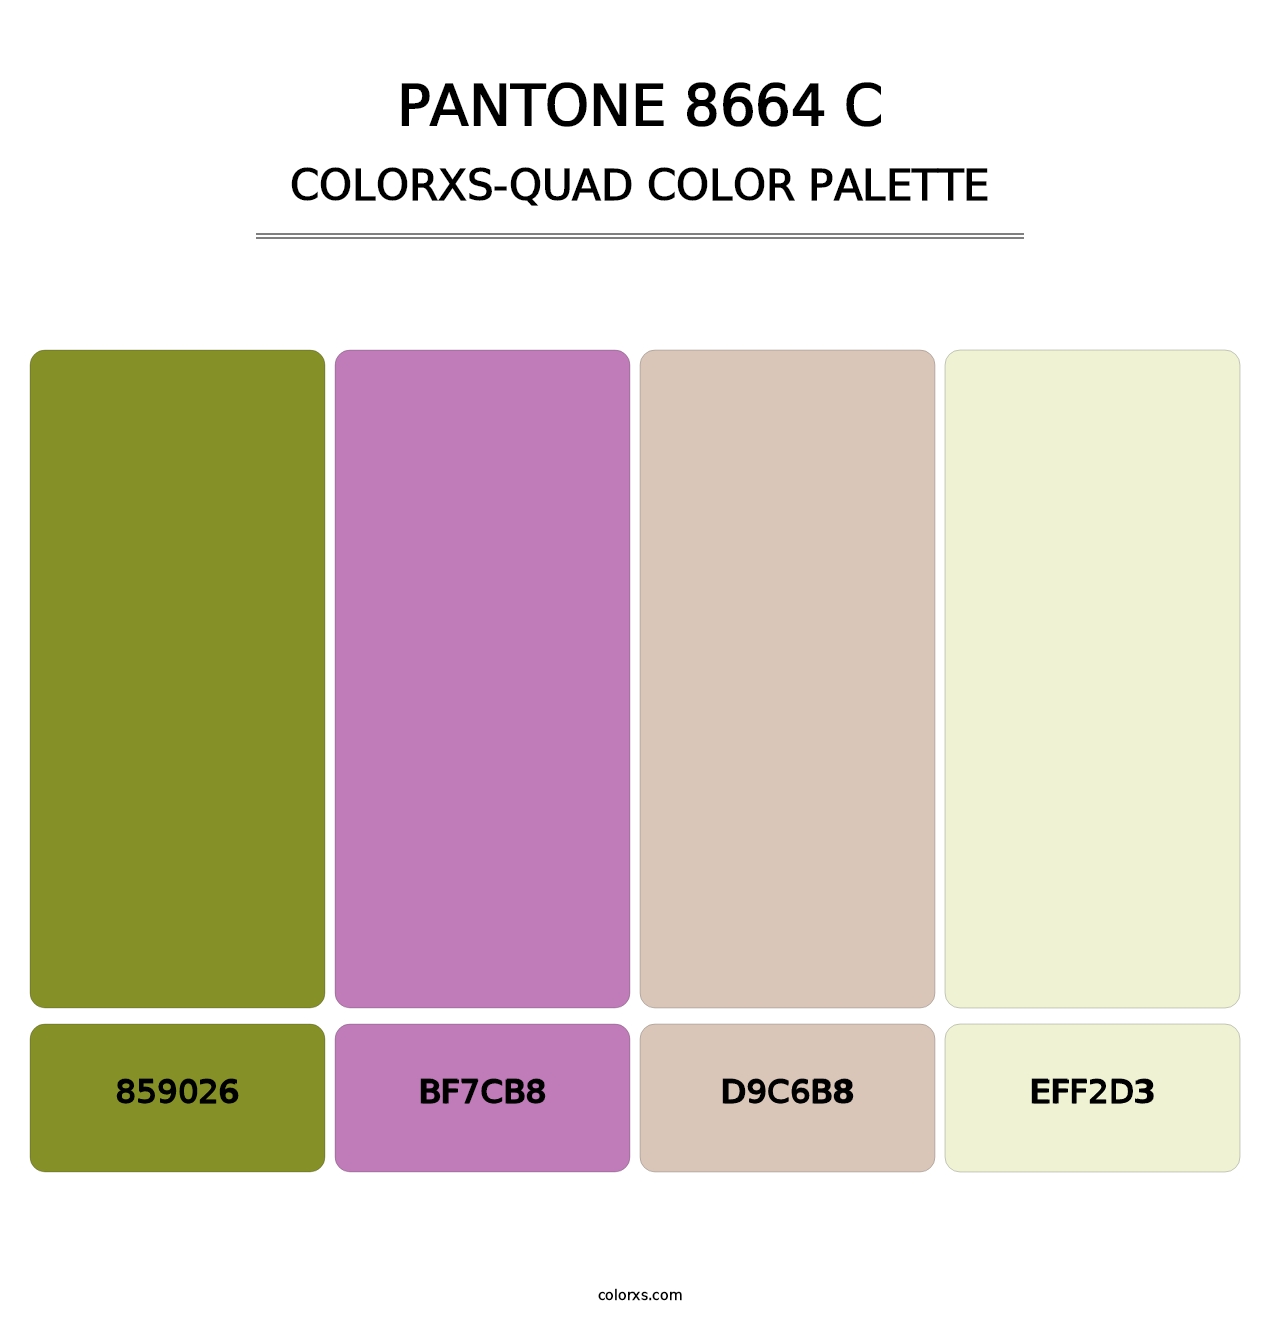 PANTONE 8664 C - Colorxs Quad Palette